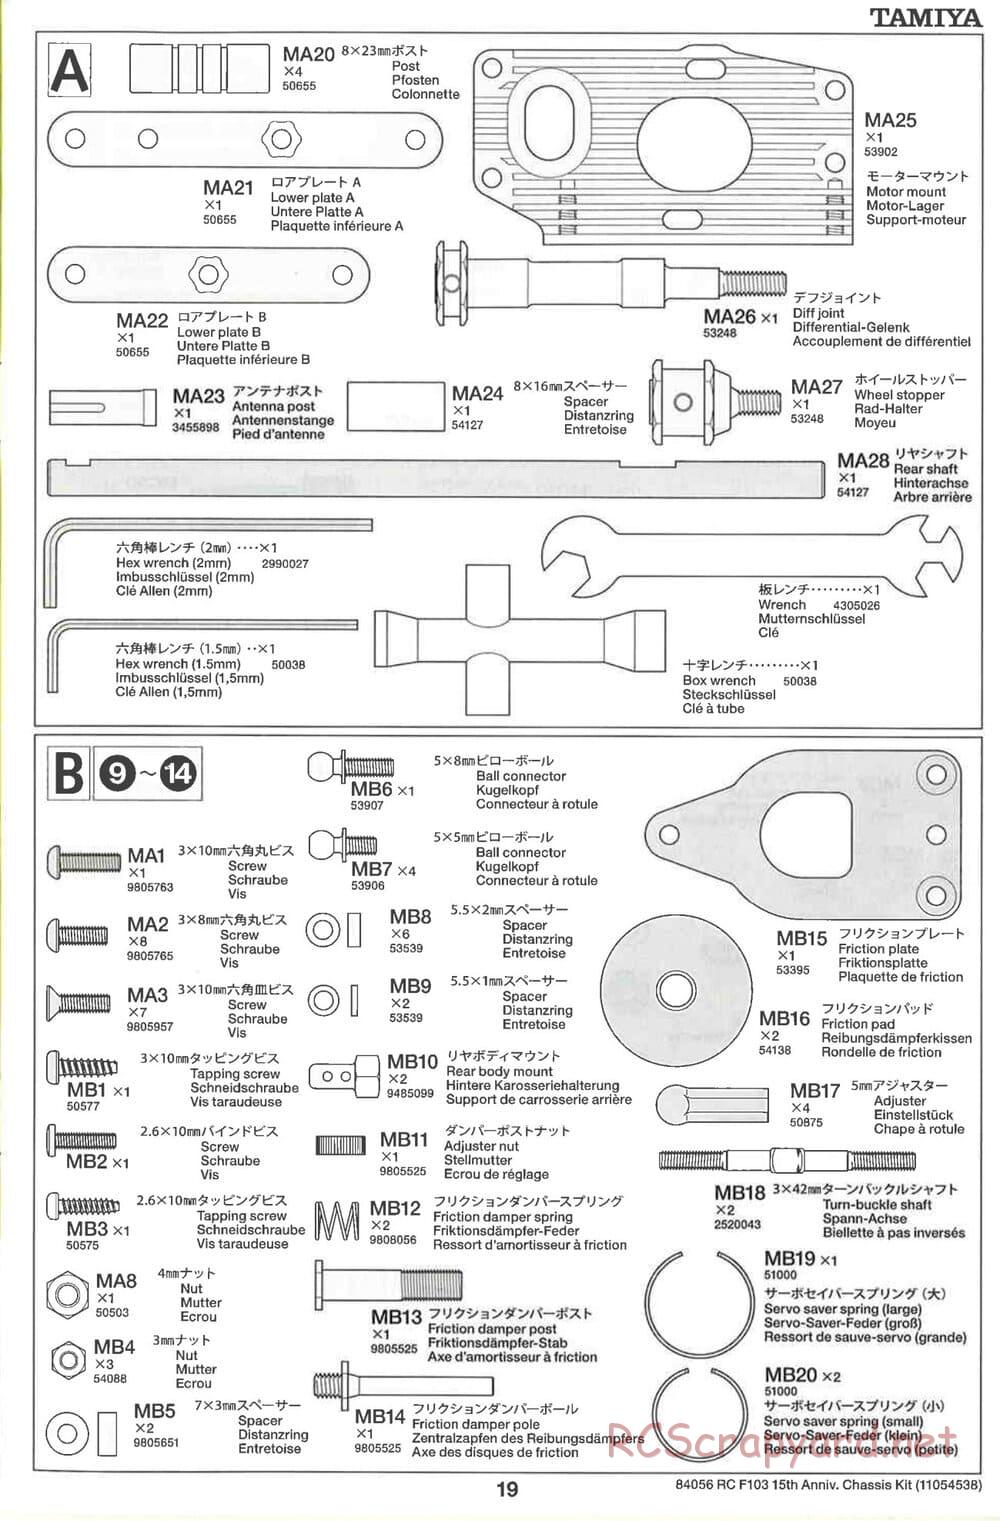 Tamiya - F103 15th Anniversary Chassis - Manual - Page 19